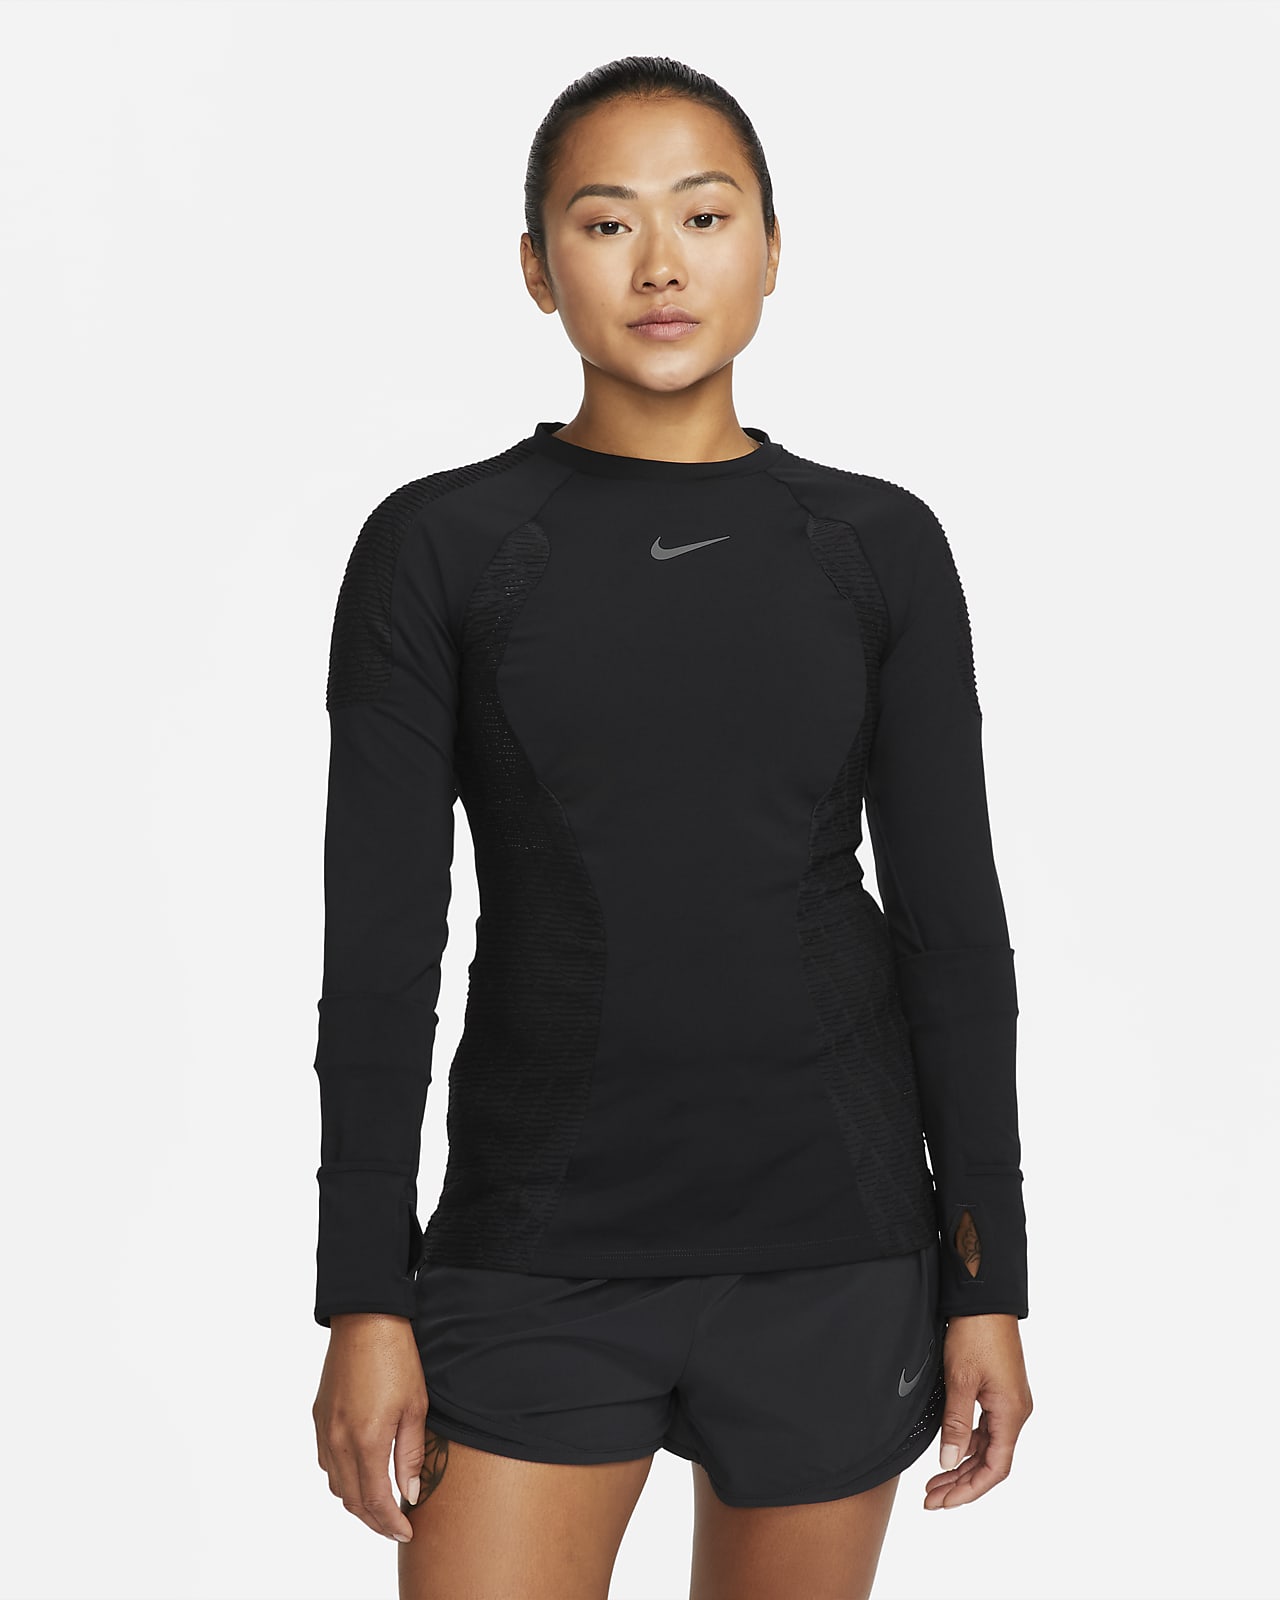 เสื้อวิ่งแขนยาวผู้หญิง Nike Dri-FIT ADV Run Division